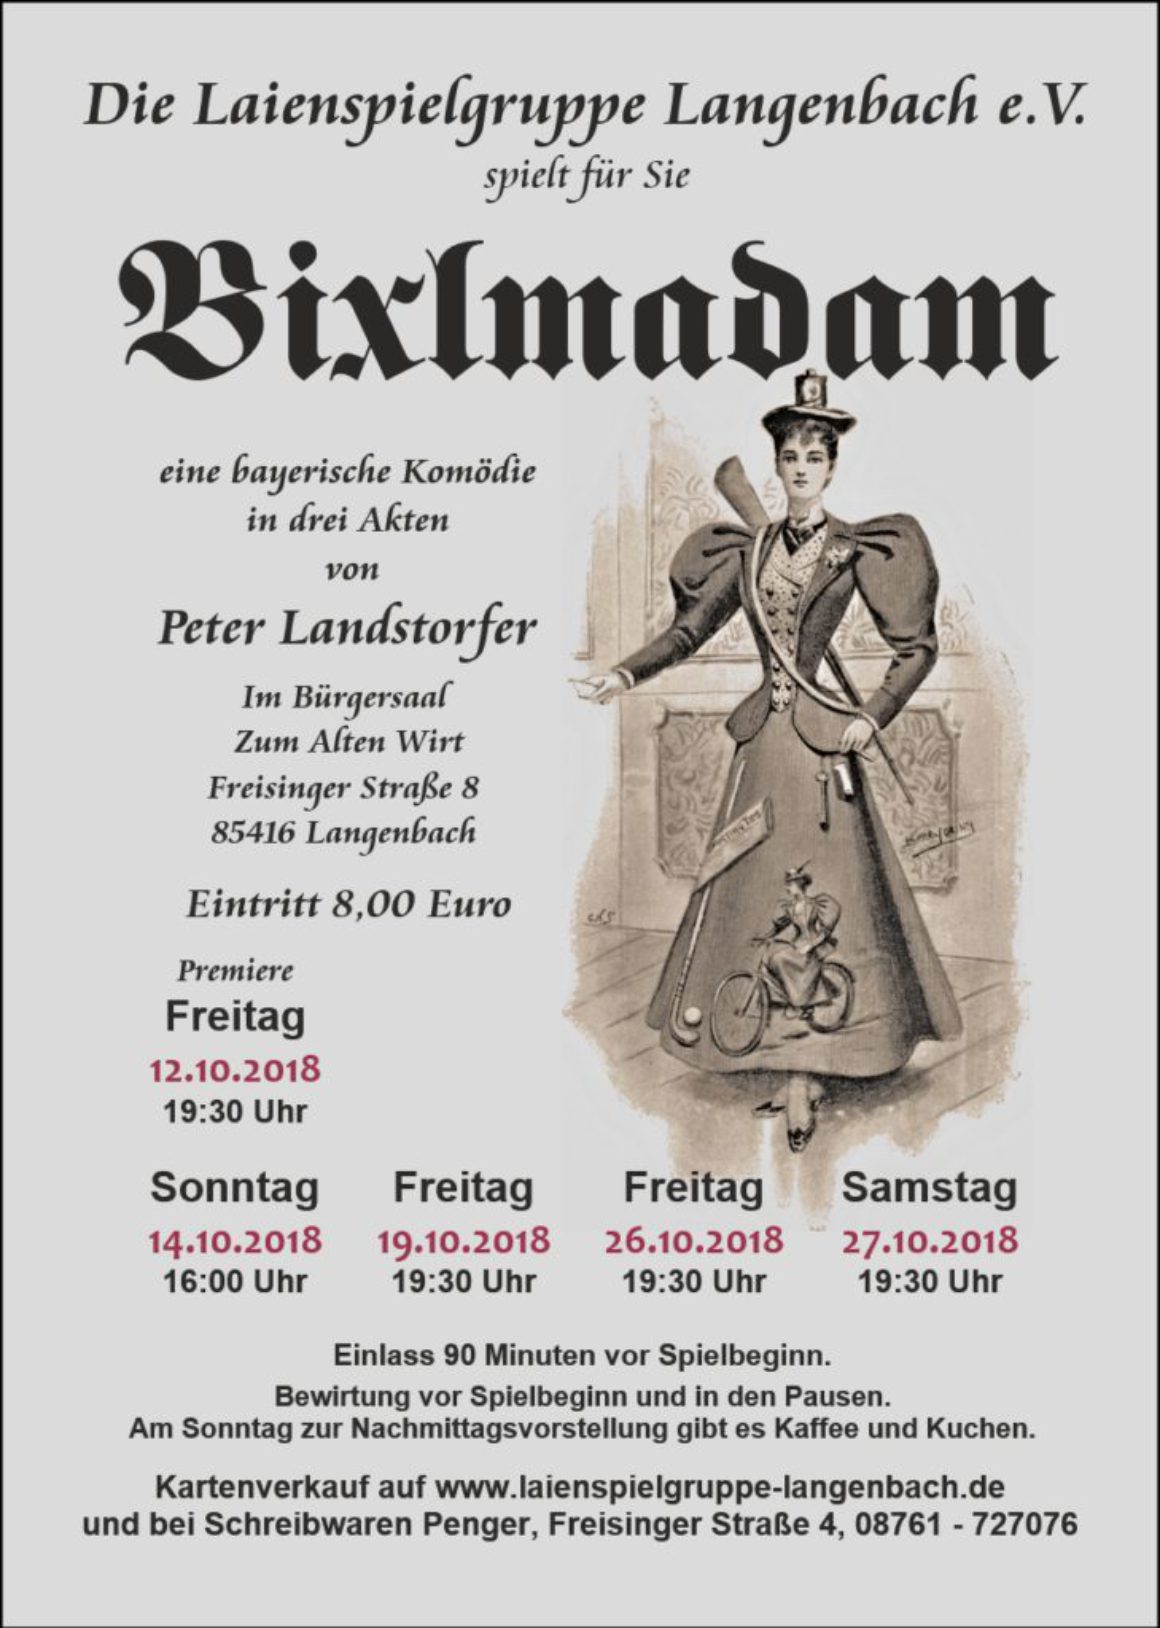 2018-08-07 Bixlmadam Flyer